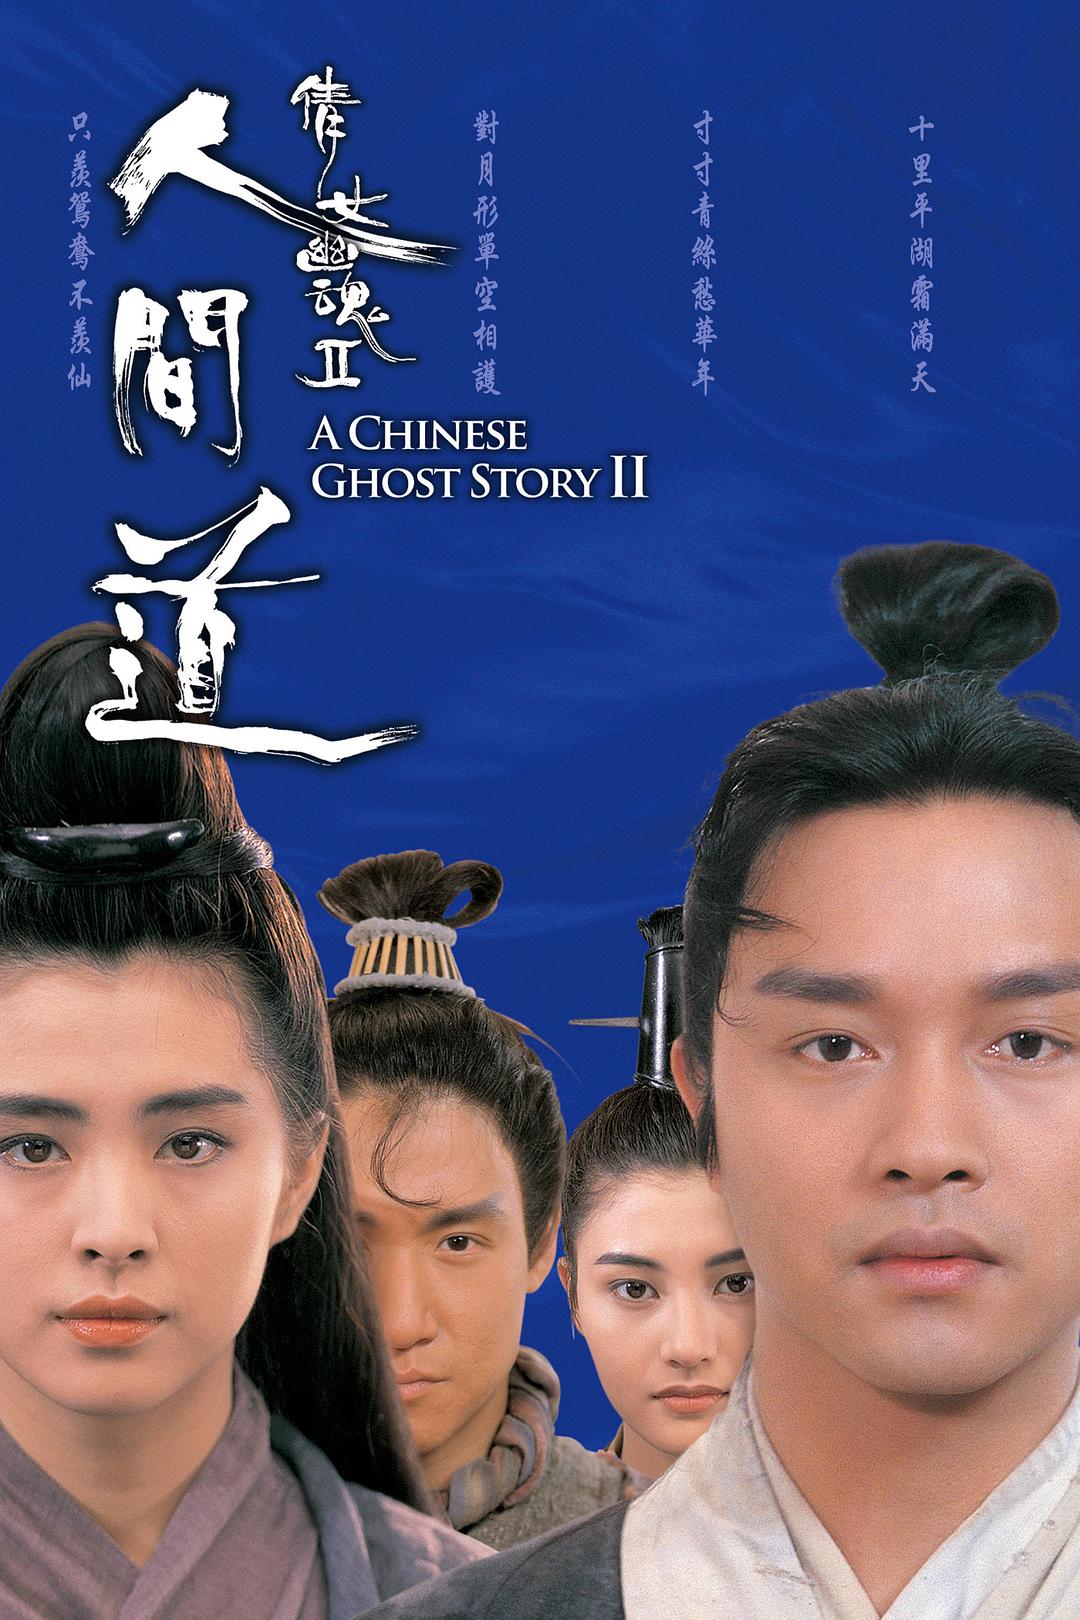 倩女幽魂2：人间道  蓝光原盘下载+高清MKV版/ 倩女幽魂2 / 1990 A Chinese Ghost Story II 19.6G